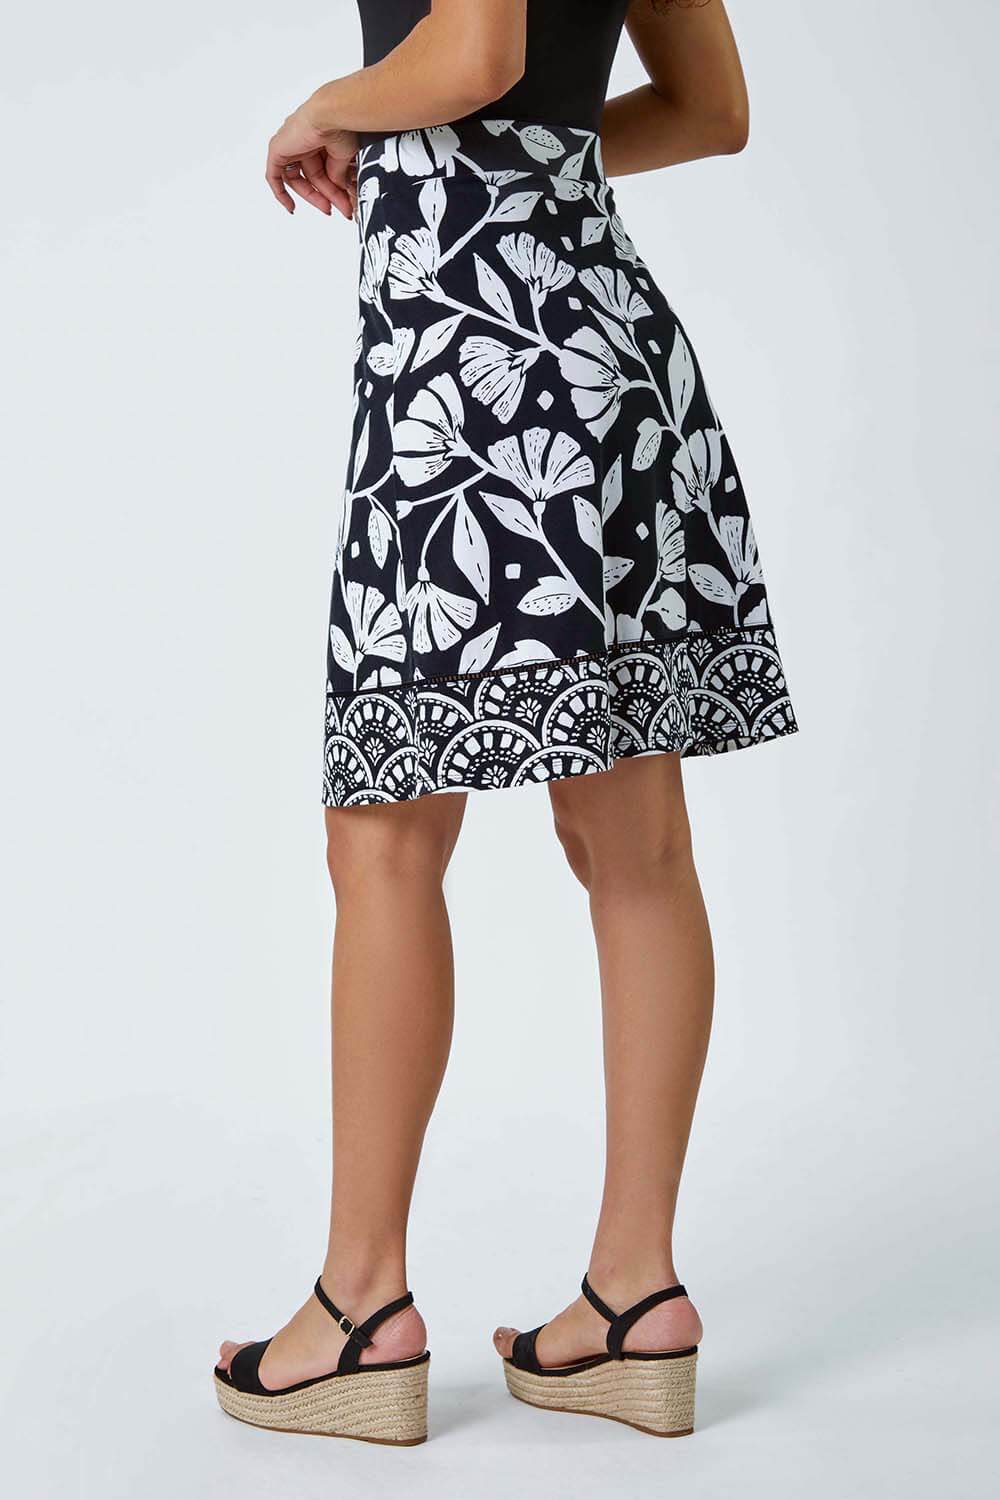 Black Cotton Blend Floral Stretch Skirt, Image 3 of 5